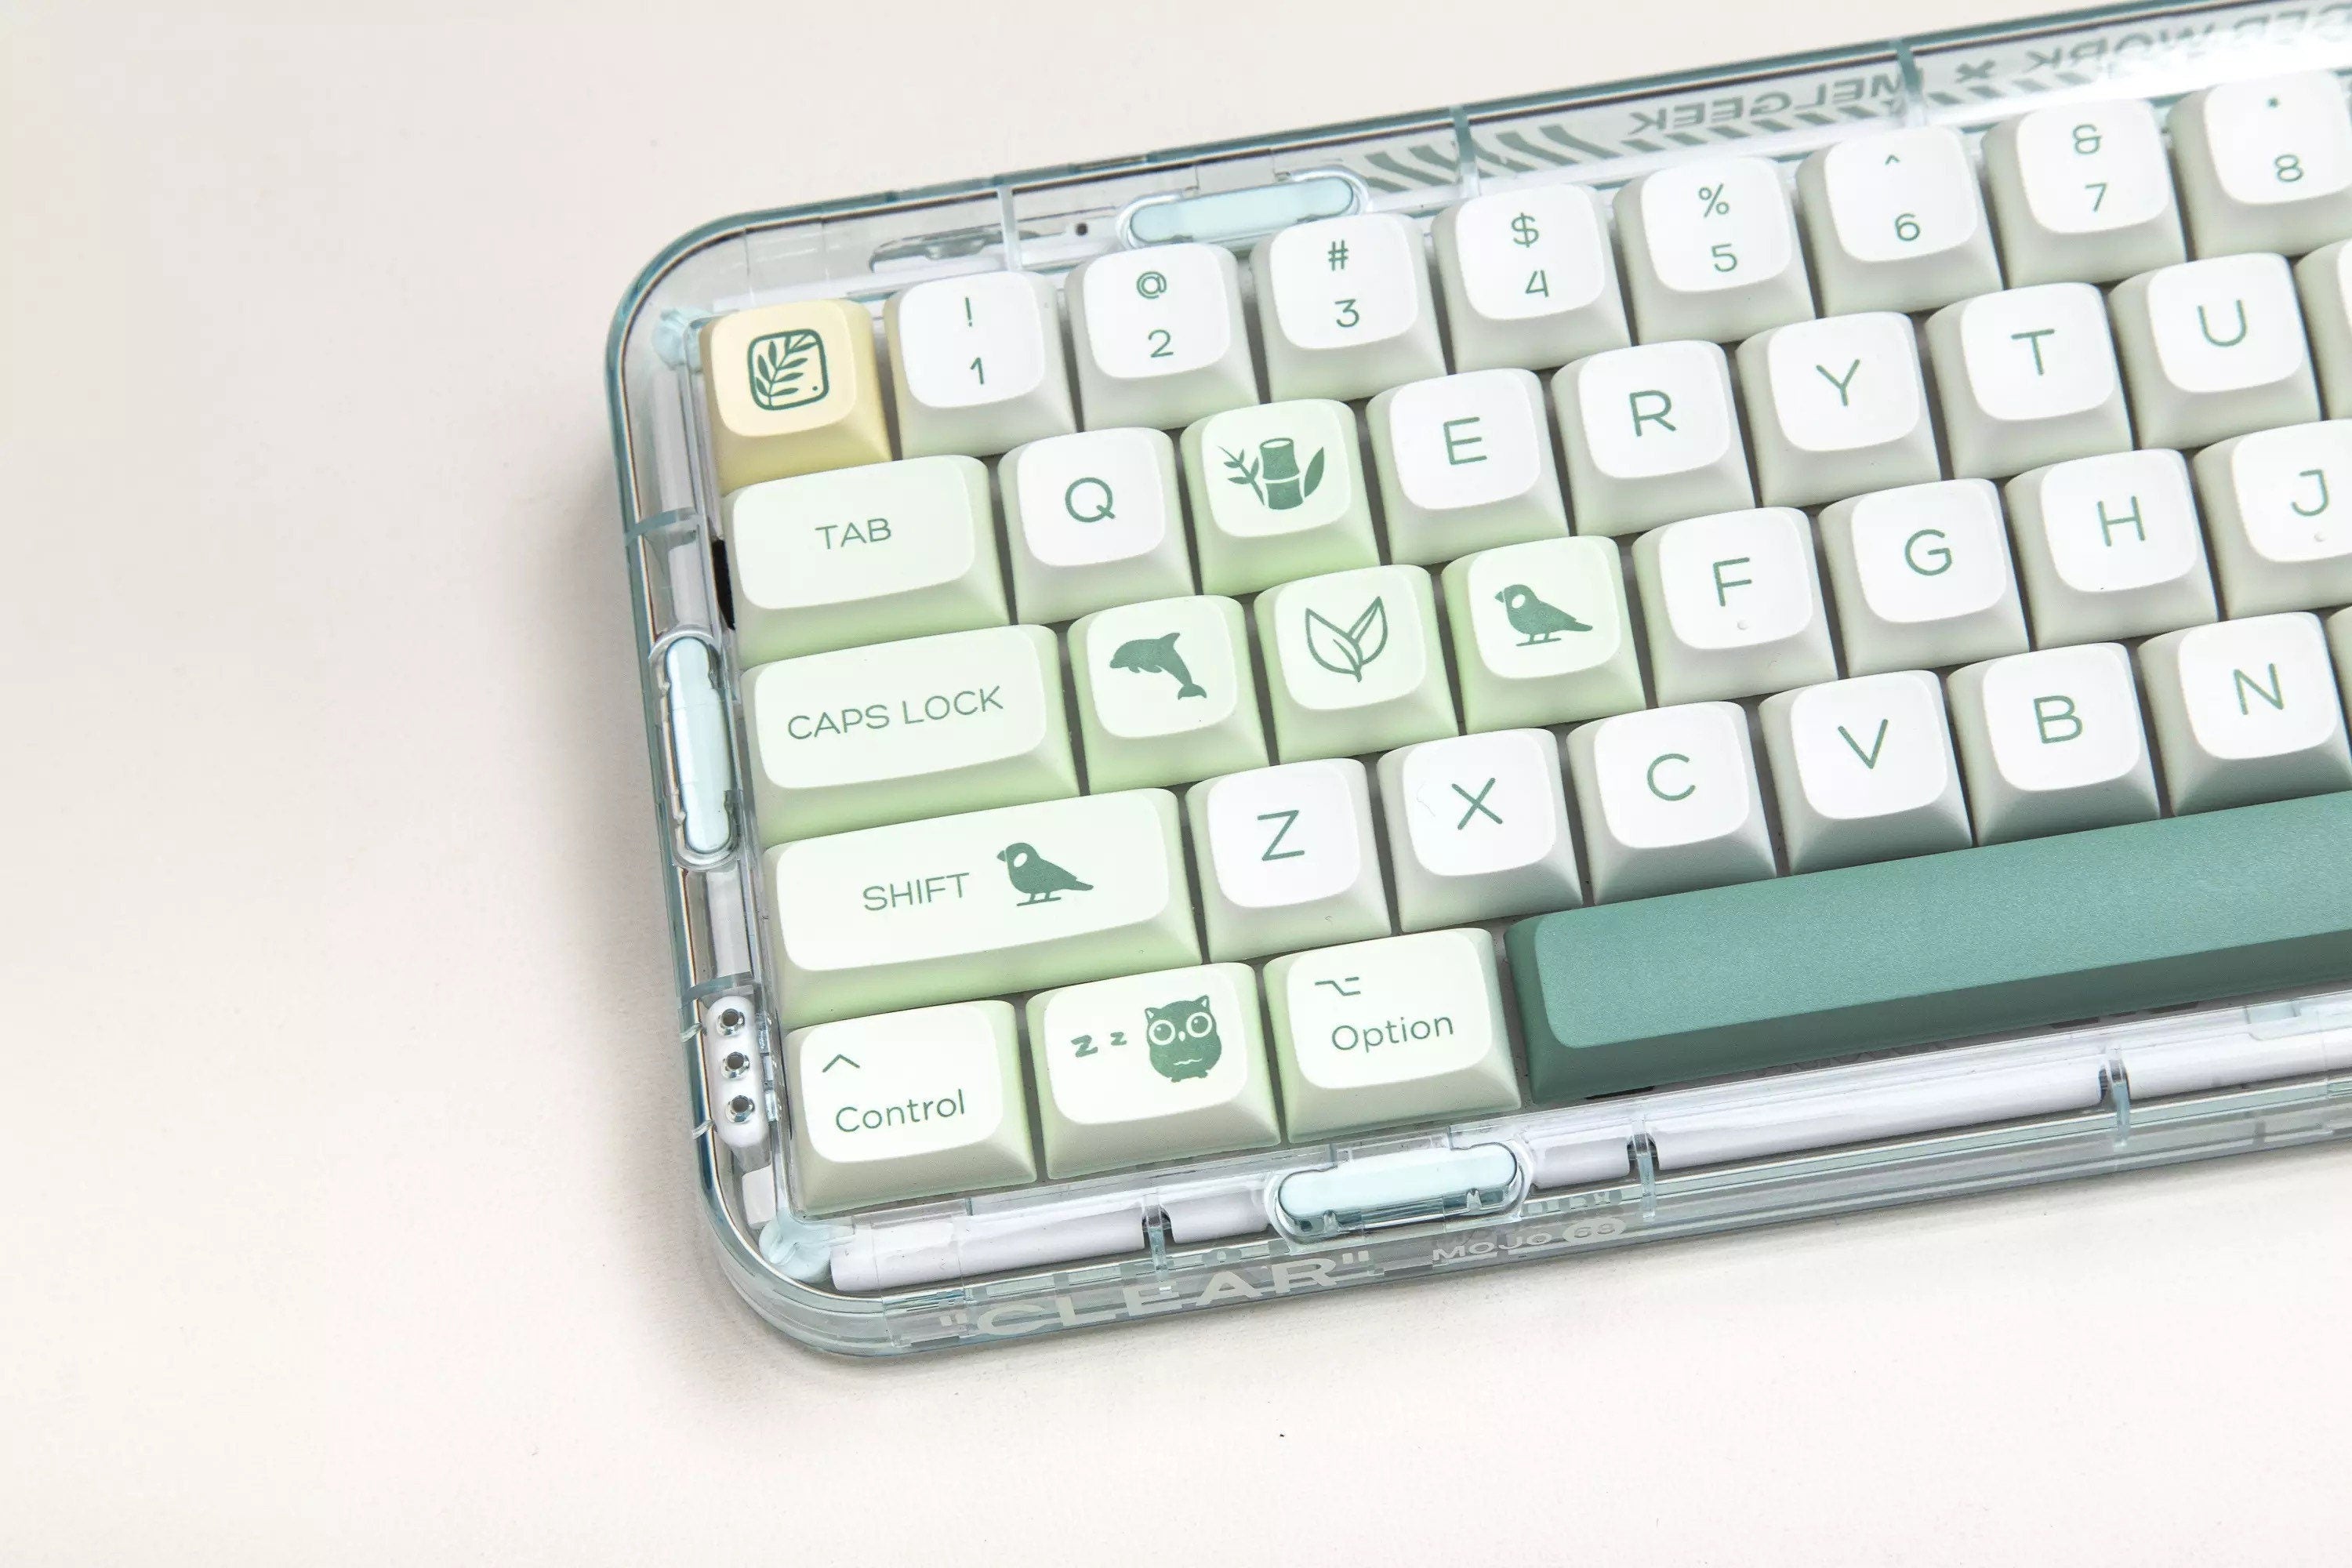 Keys | 144 Custom Keycaps | “Birds” Theme For Mechanical Keyboard MX Switch Type | XDA Profile PBT